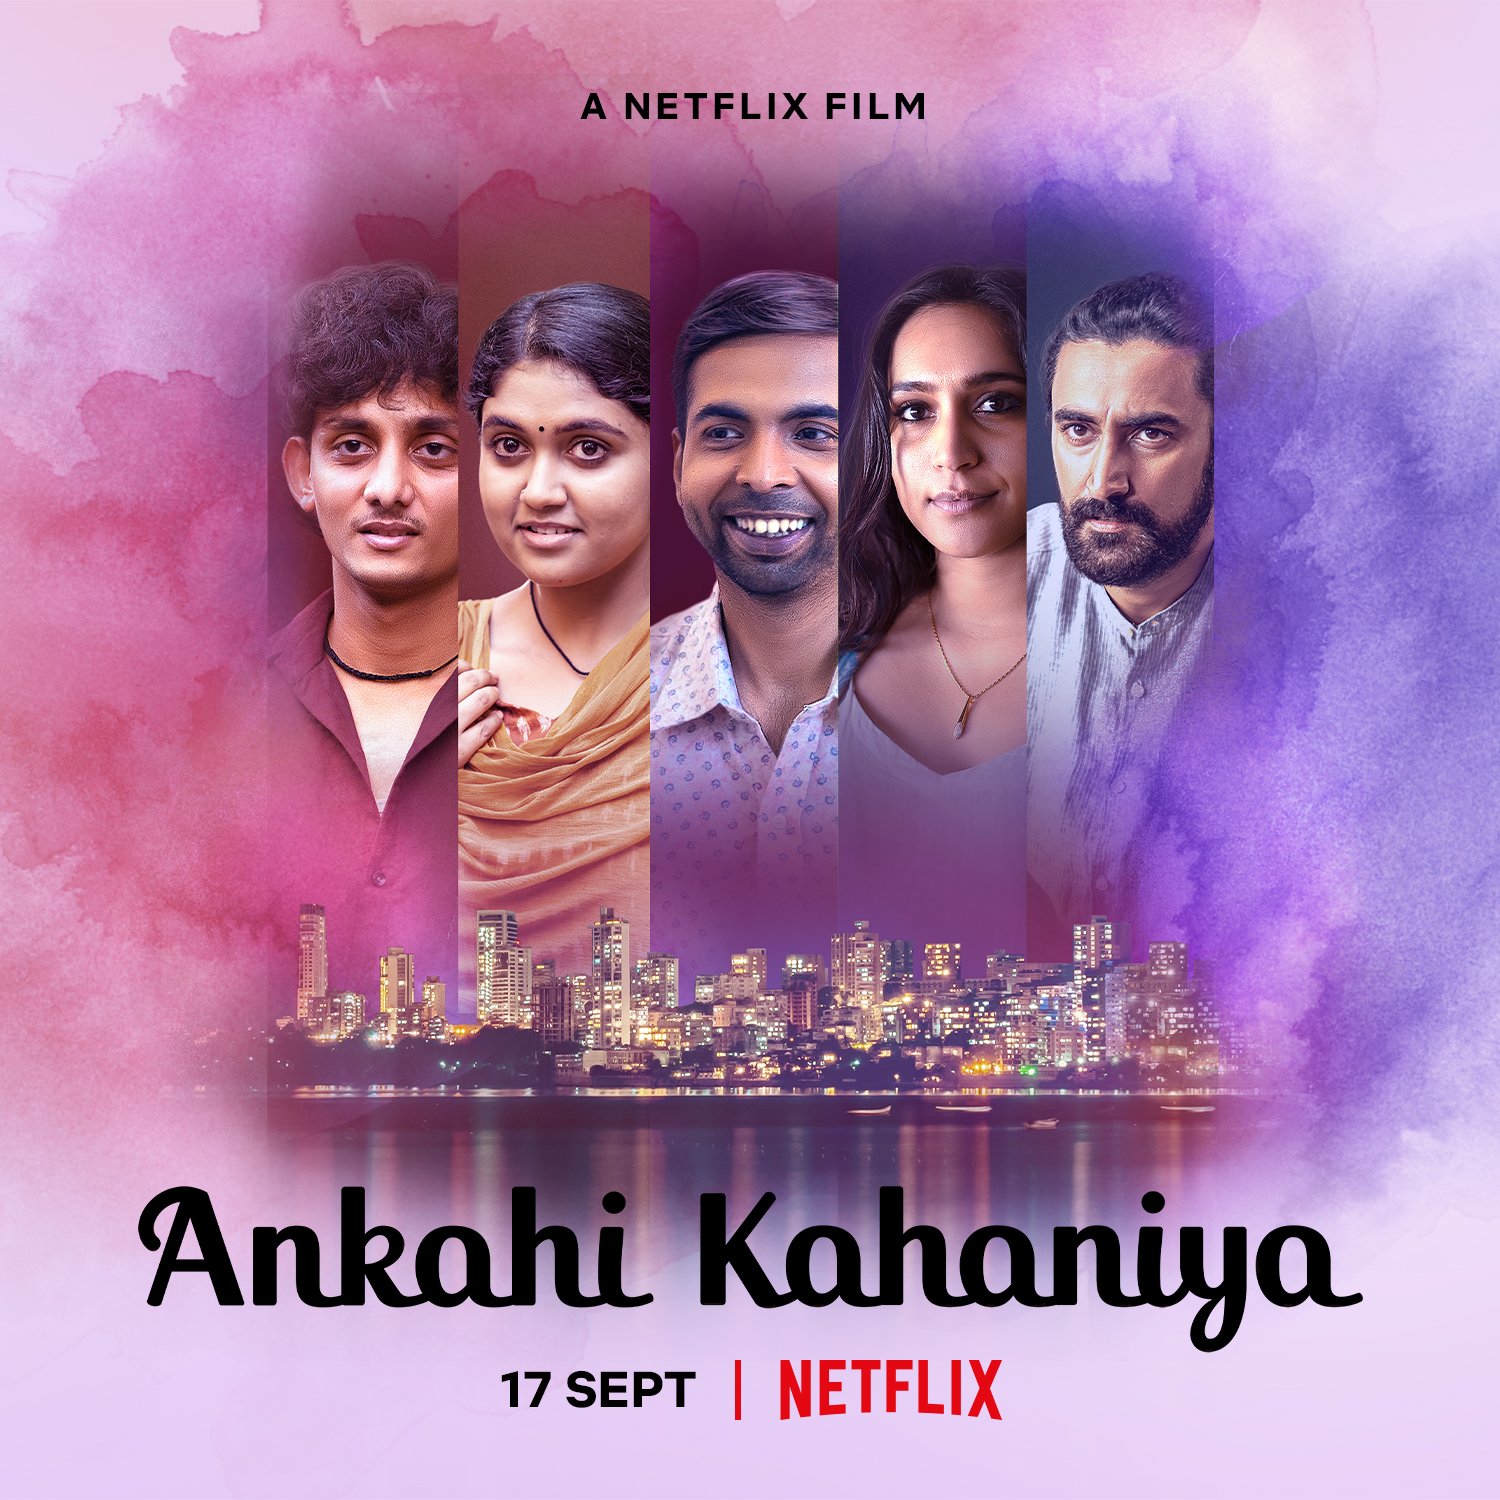 ดูหนังออนไลน์ฟรี Ankahi Kahaniya (2021) เรื่องรัก เรื่องหัวใจ [ซับไทย]